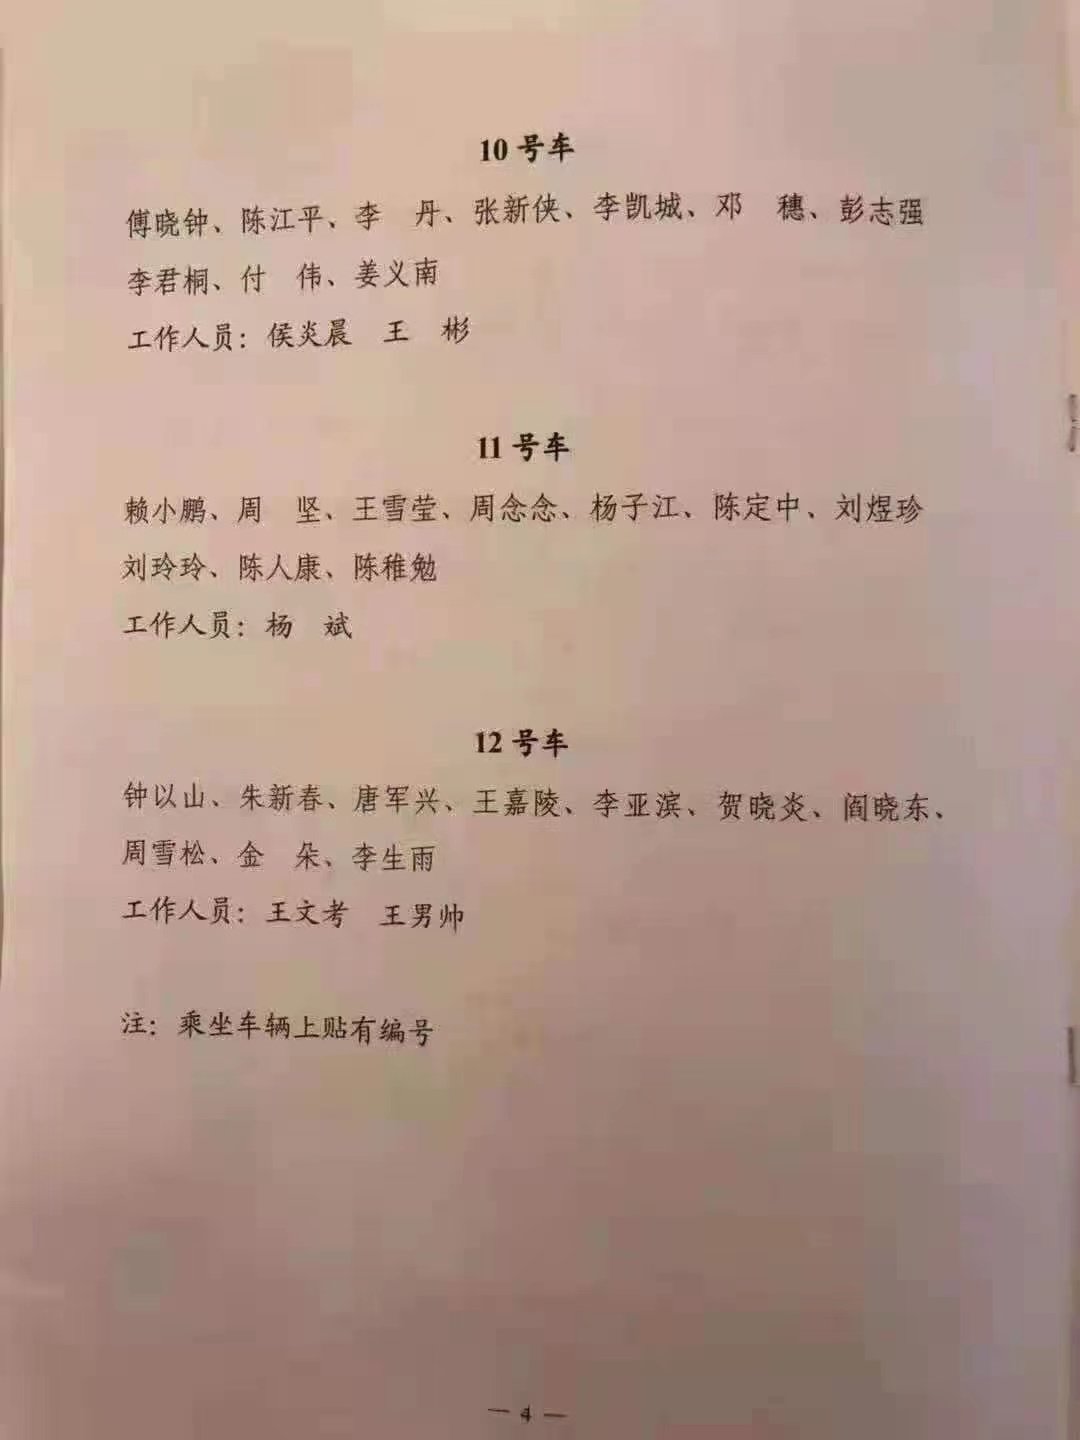 중국 독립기자 가오위가 3일 트위터에 올린 중국공산당 창당 100주년 행사장으로 원로 후손 가족을 안내하는 셔틀 차량 명단 사진. [가오위 트위터 캡처]